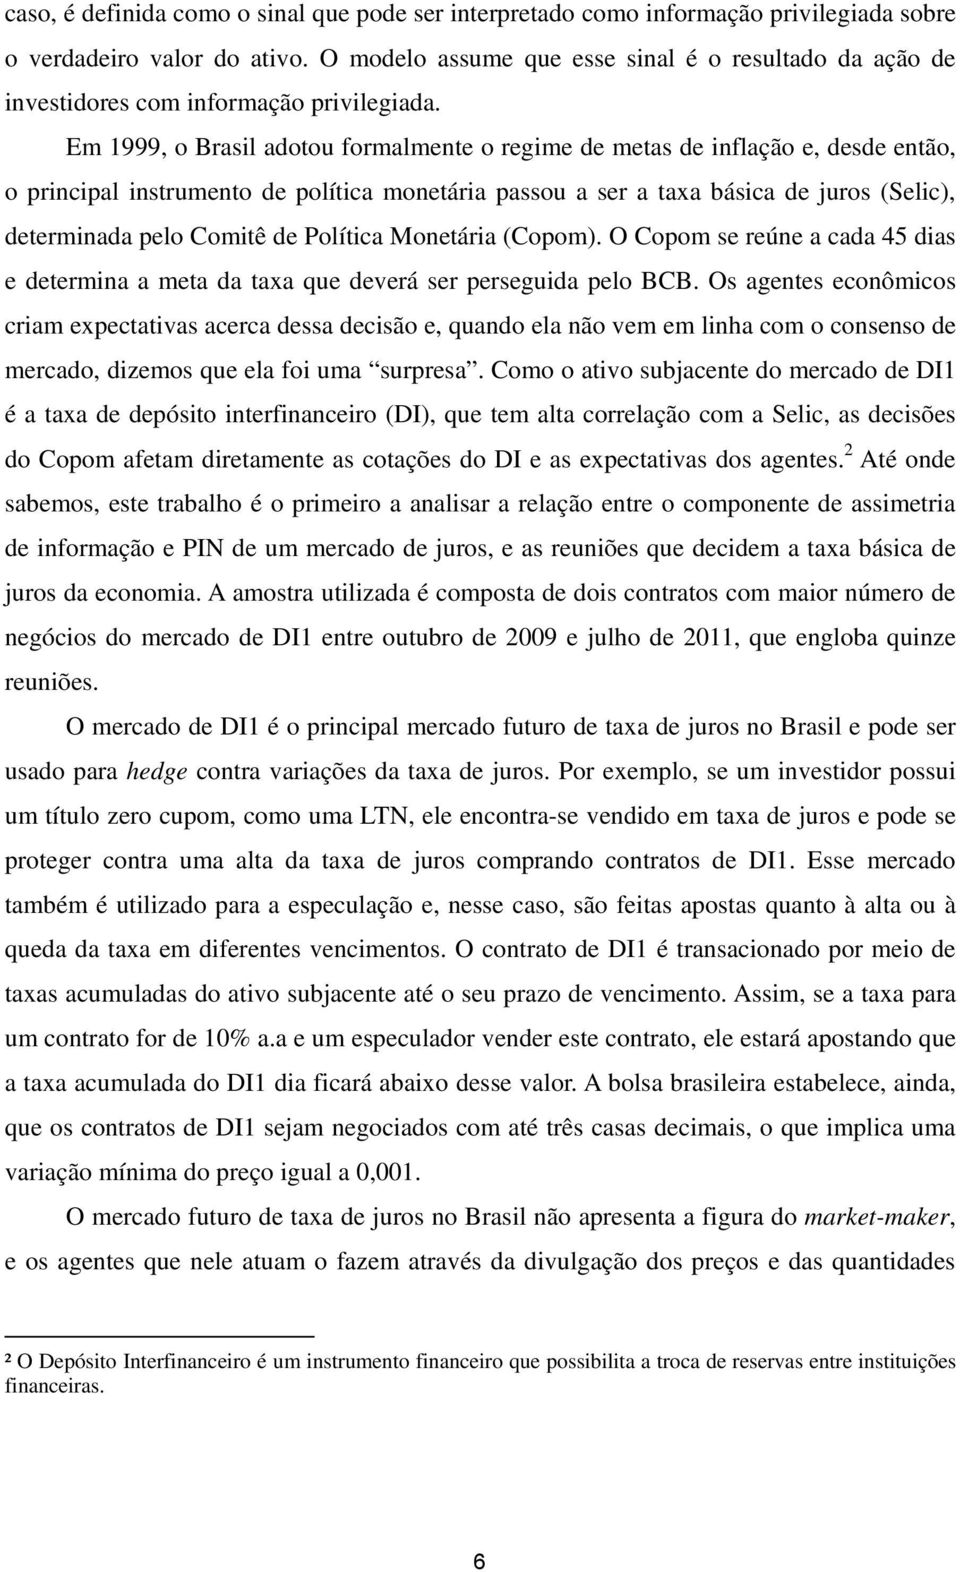 Em 1999, o Brasil adotou formalmente o regime de metas de inflação e, desde então, o principal instrumento de política monetária passou a ser a taxa básica de juros (Selic), determinada pelo Comitê